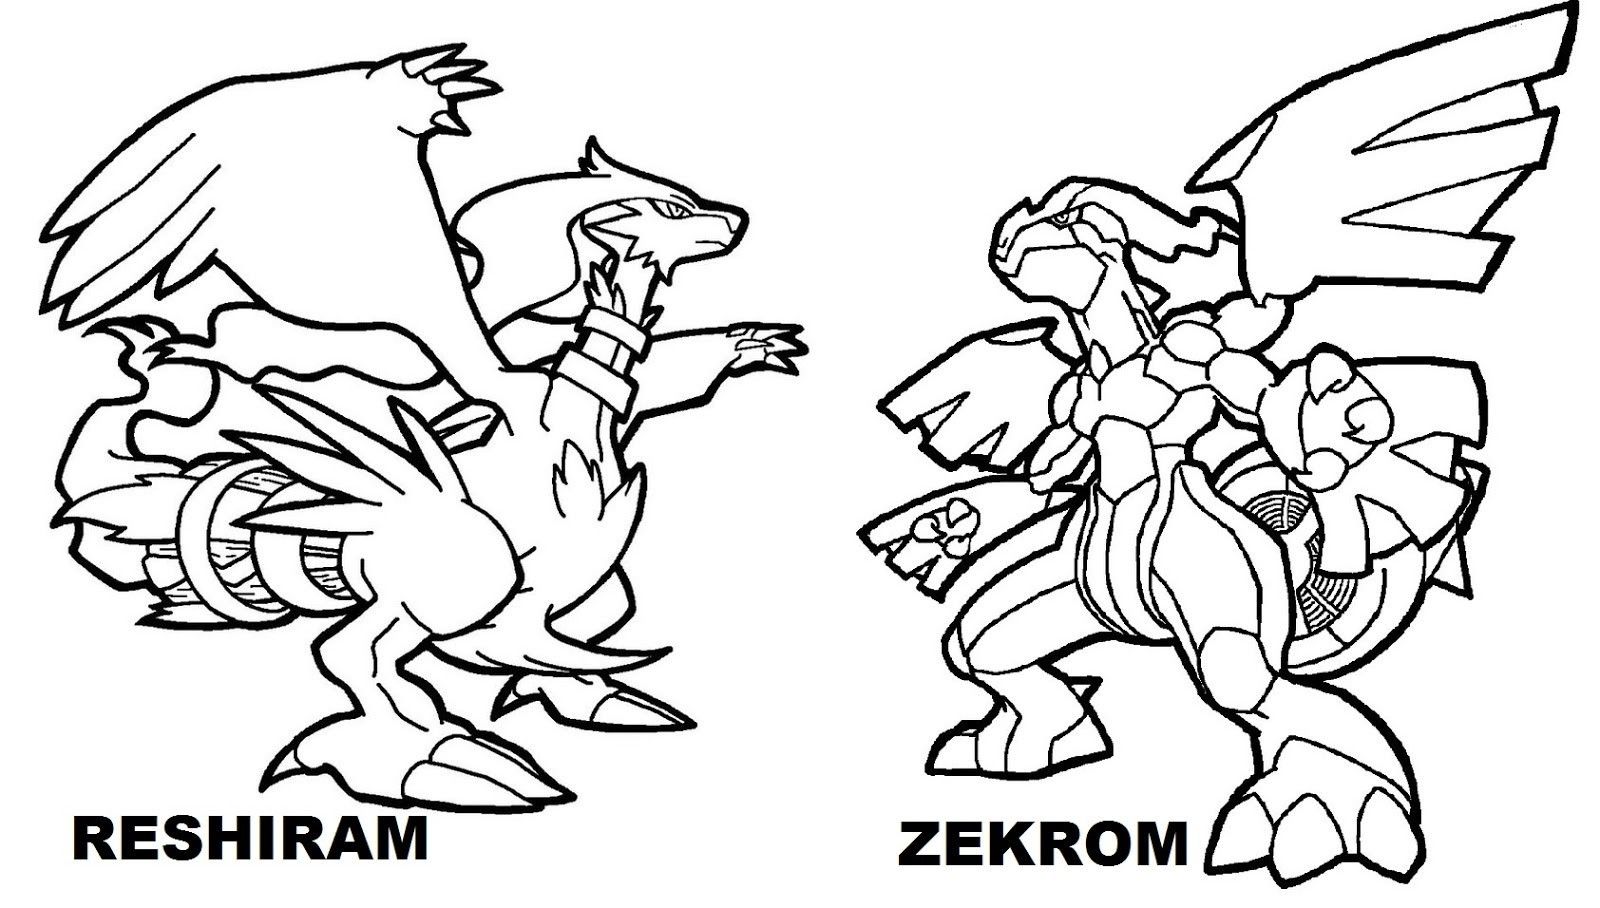 Zekrom and Reshiram from Dragon